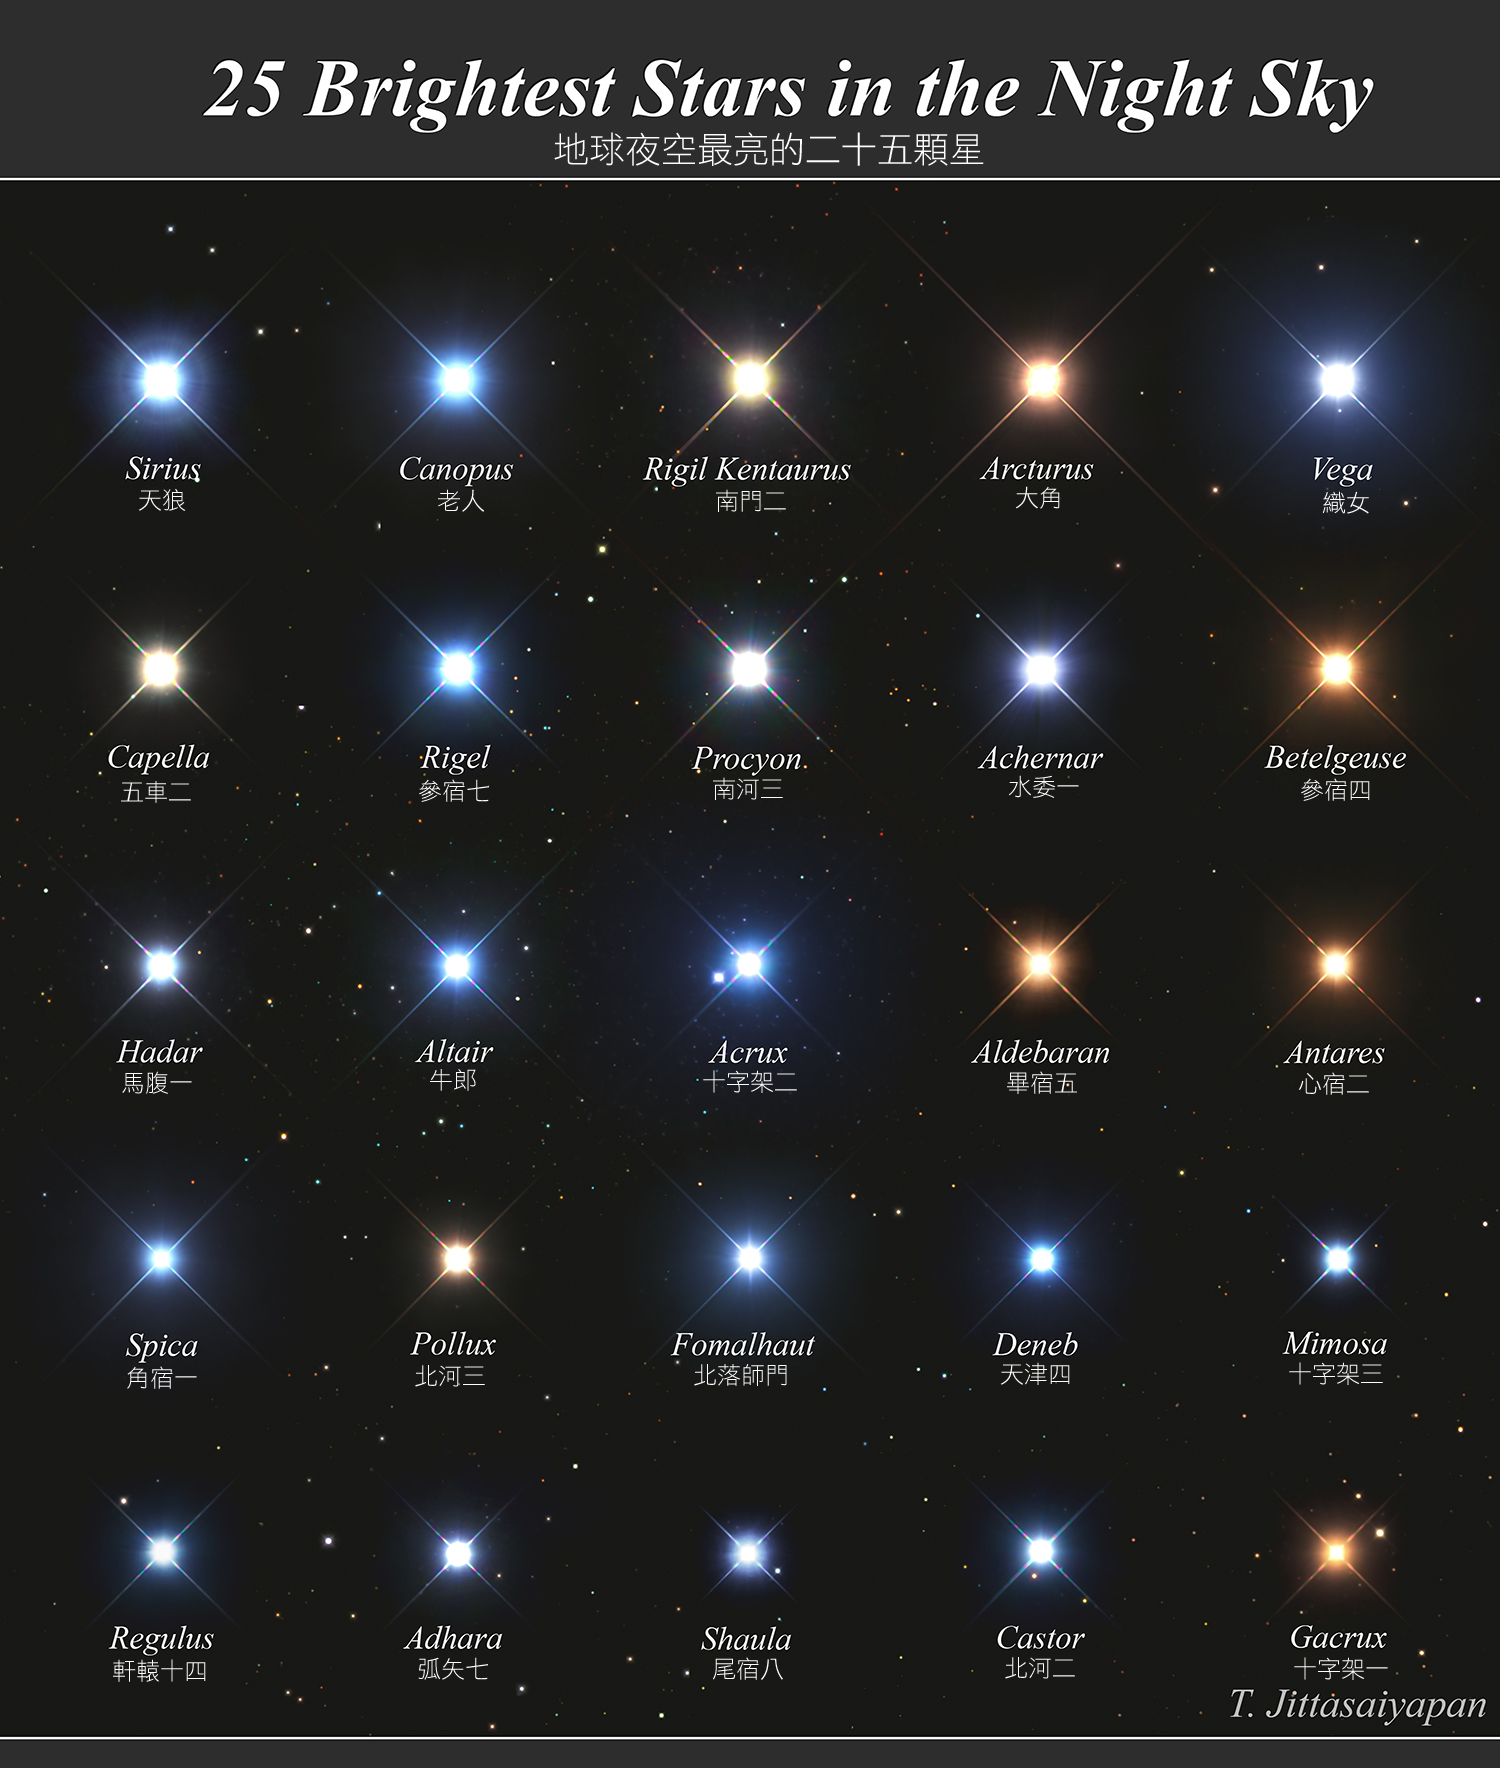  夜空最亮的二十五顆星 <br />影像提供與版權: Tragoolchitr Jittasaiyapan <br />說明: 你知道最明亮的一些恆星之芳名嗎？ 可能你曉得，縱然有些亮星的名字極為古老，其定名可回溯到信史肇始之初。 許多世界各地的文明，以不同的名字稱呼這些最明亮的恆星。 而且在文化和歷史傳承上，知道這些名稱有其重要性。 不過為了信息能交換無誤，國際天文聯盟（IAU）帶頭把恆星的名稱標準化。<br /> 